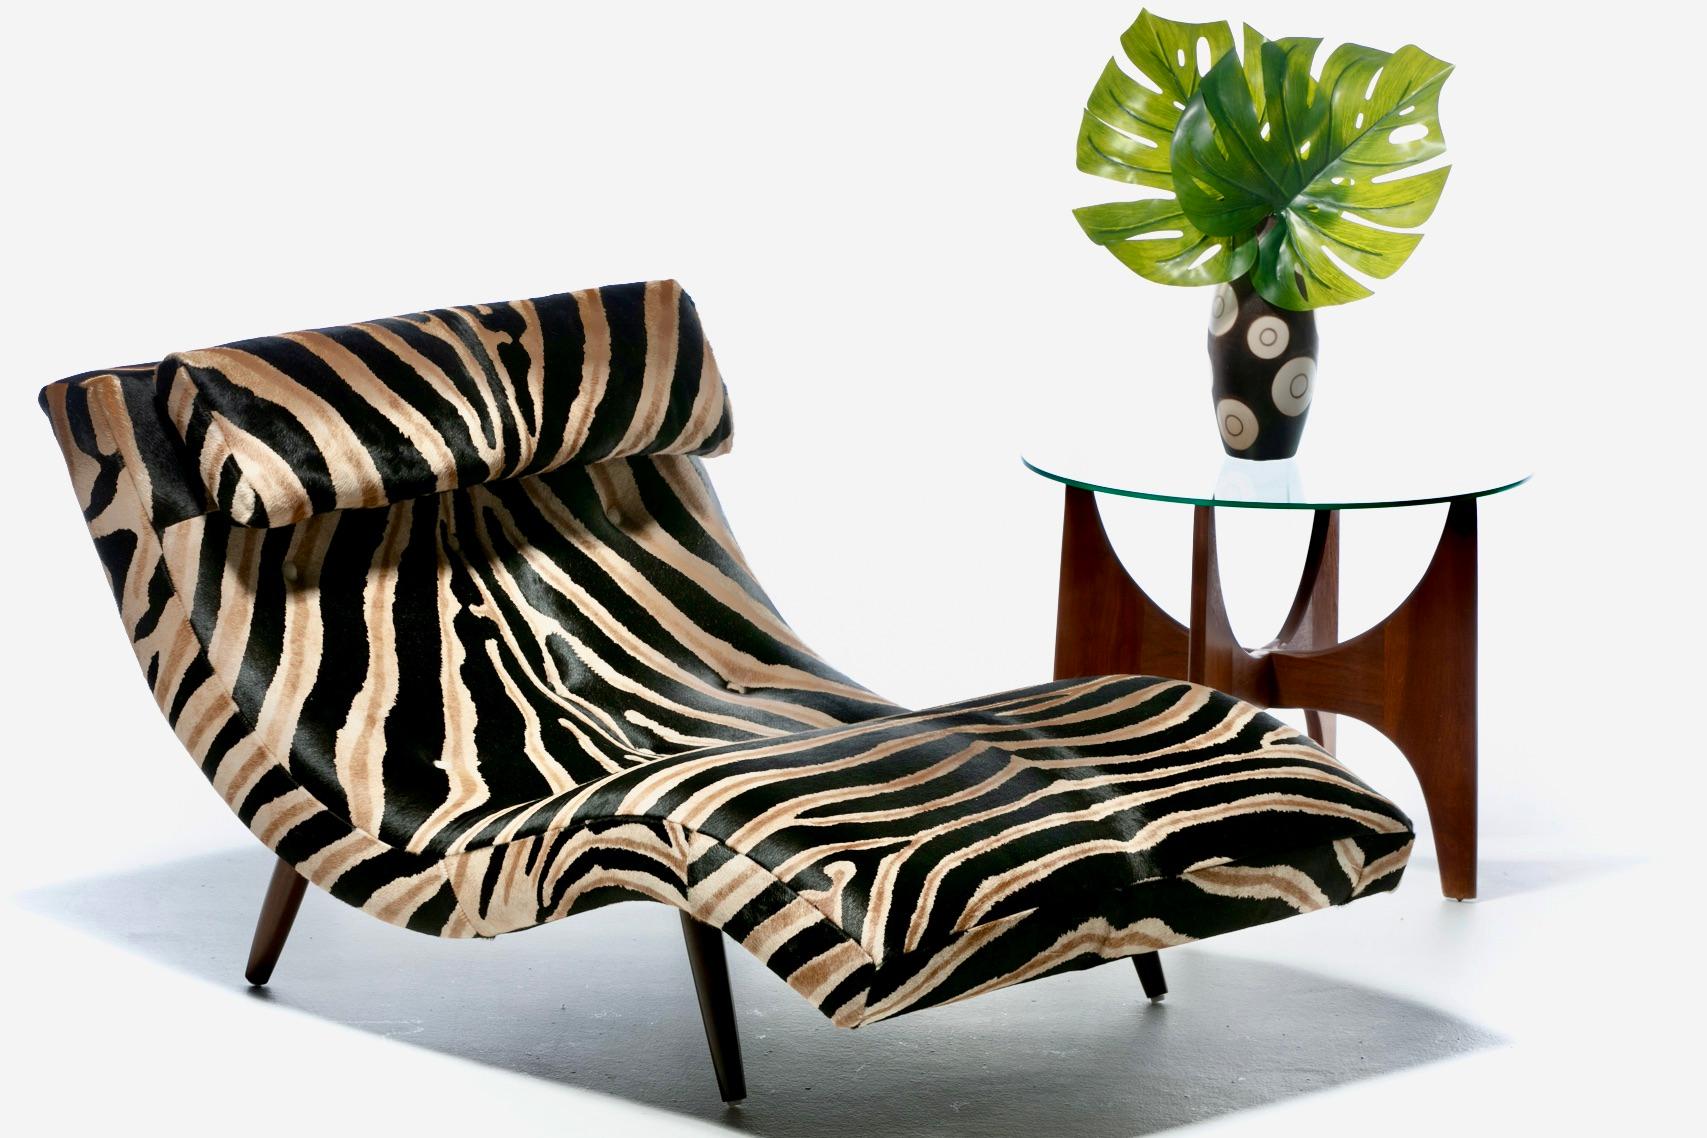 Un seul coup d'œil et vous serez séduit par cette magnifique chaise en forme de vague de style Mid-Century Modern, conçue par le célèbre designer Adrian Pearsall et fraîchement retapissée dans de riches peaux de vache zébrées. Sans aucun doute,